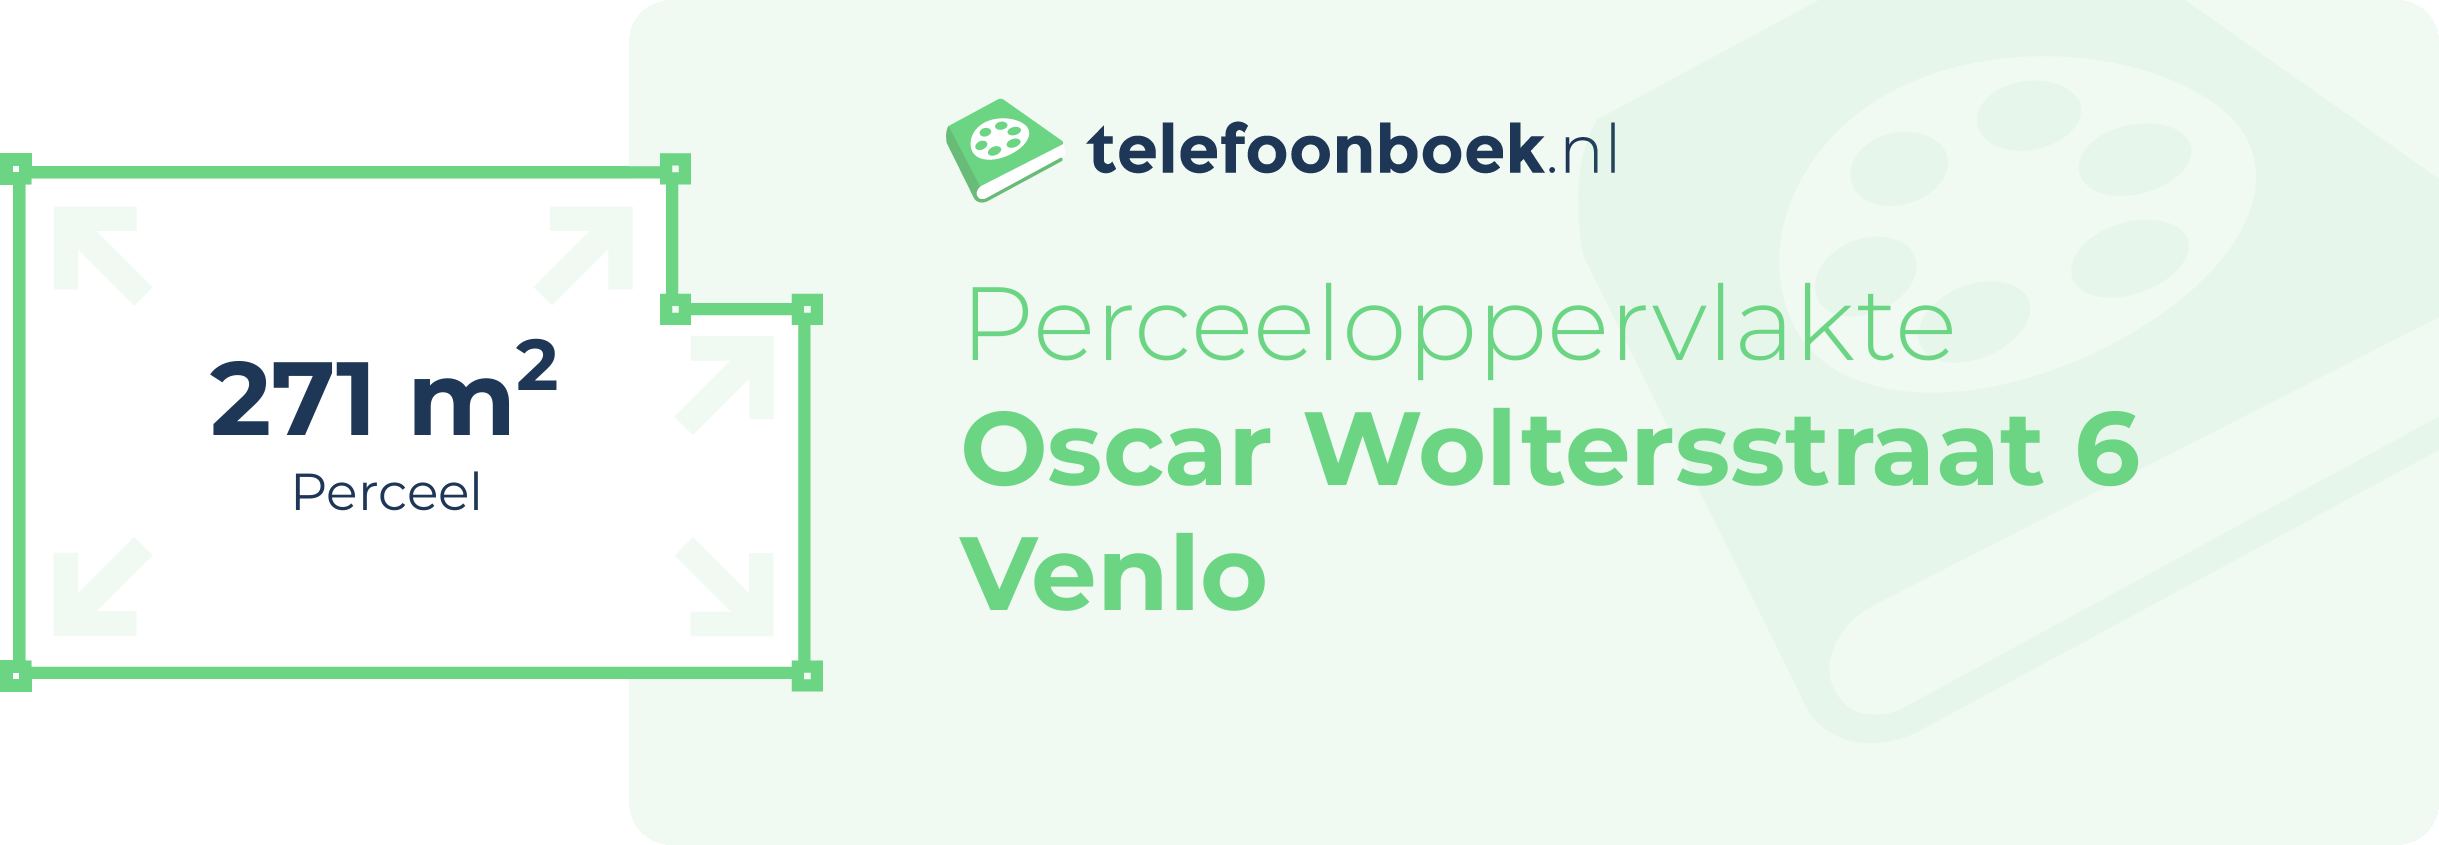 Perceeloppervlakte Oscar Woltersstraat 6 Venlo